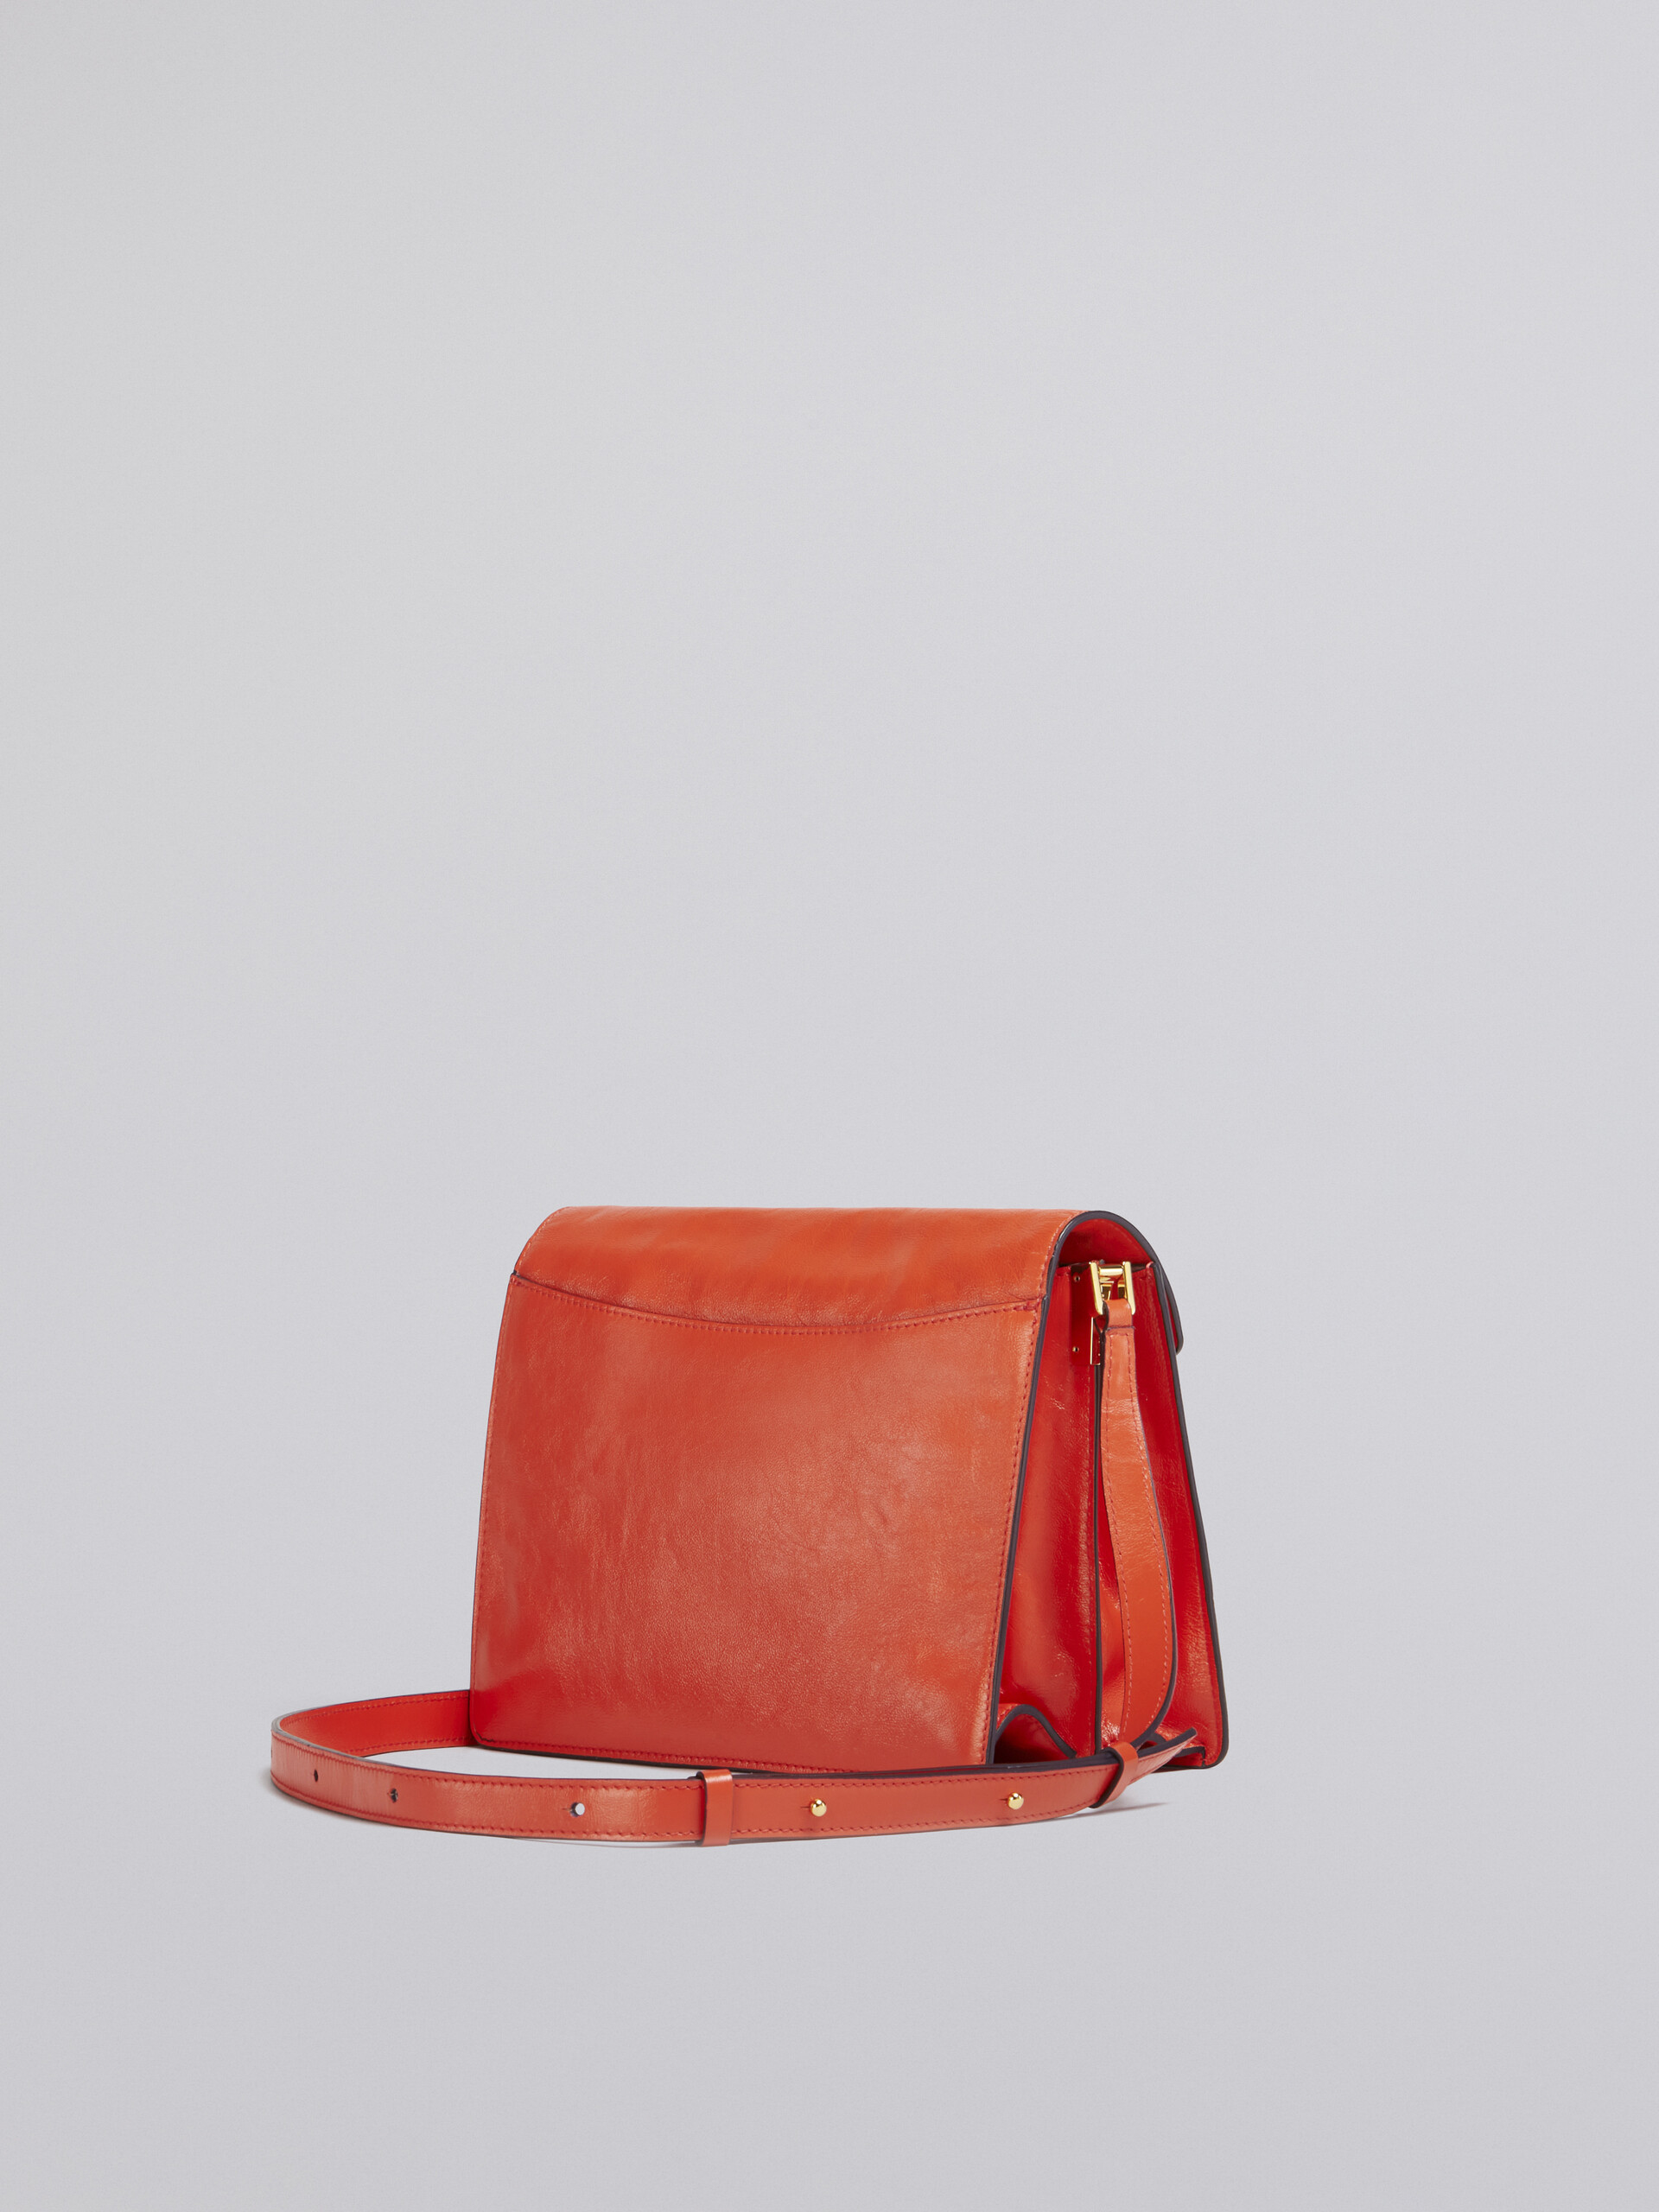 TRUNK SOFT large bag in orange leather - Shoulder Bags - Image 2